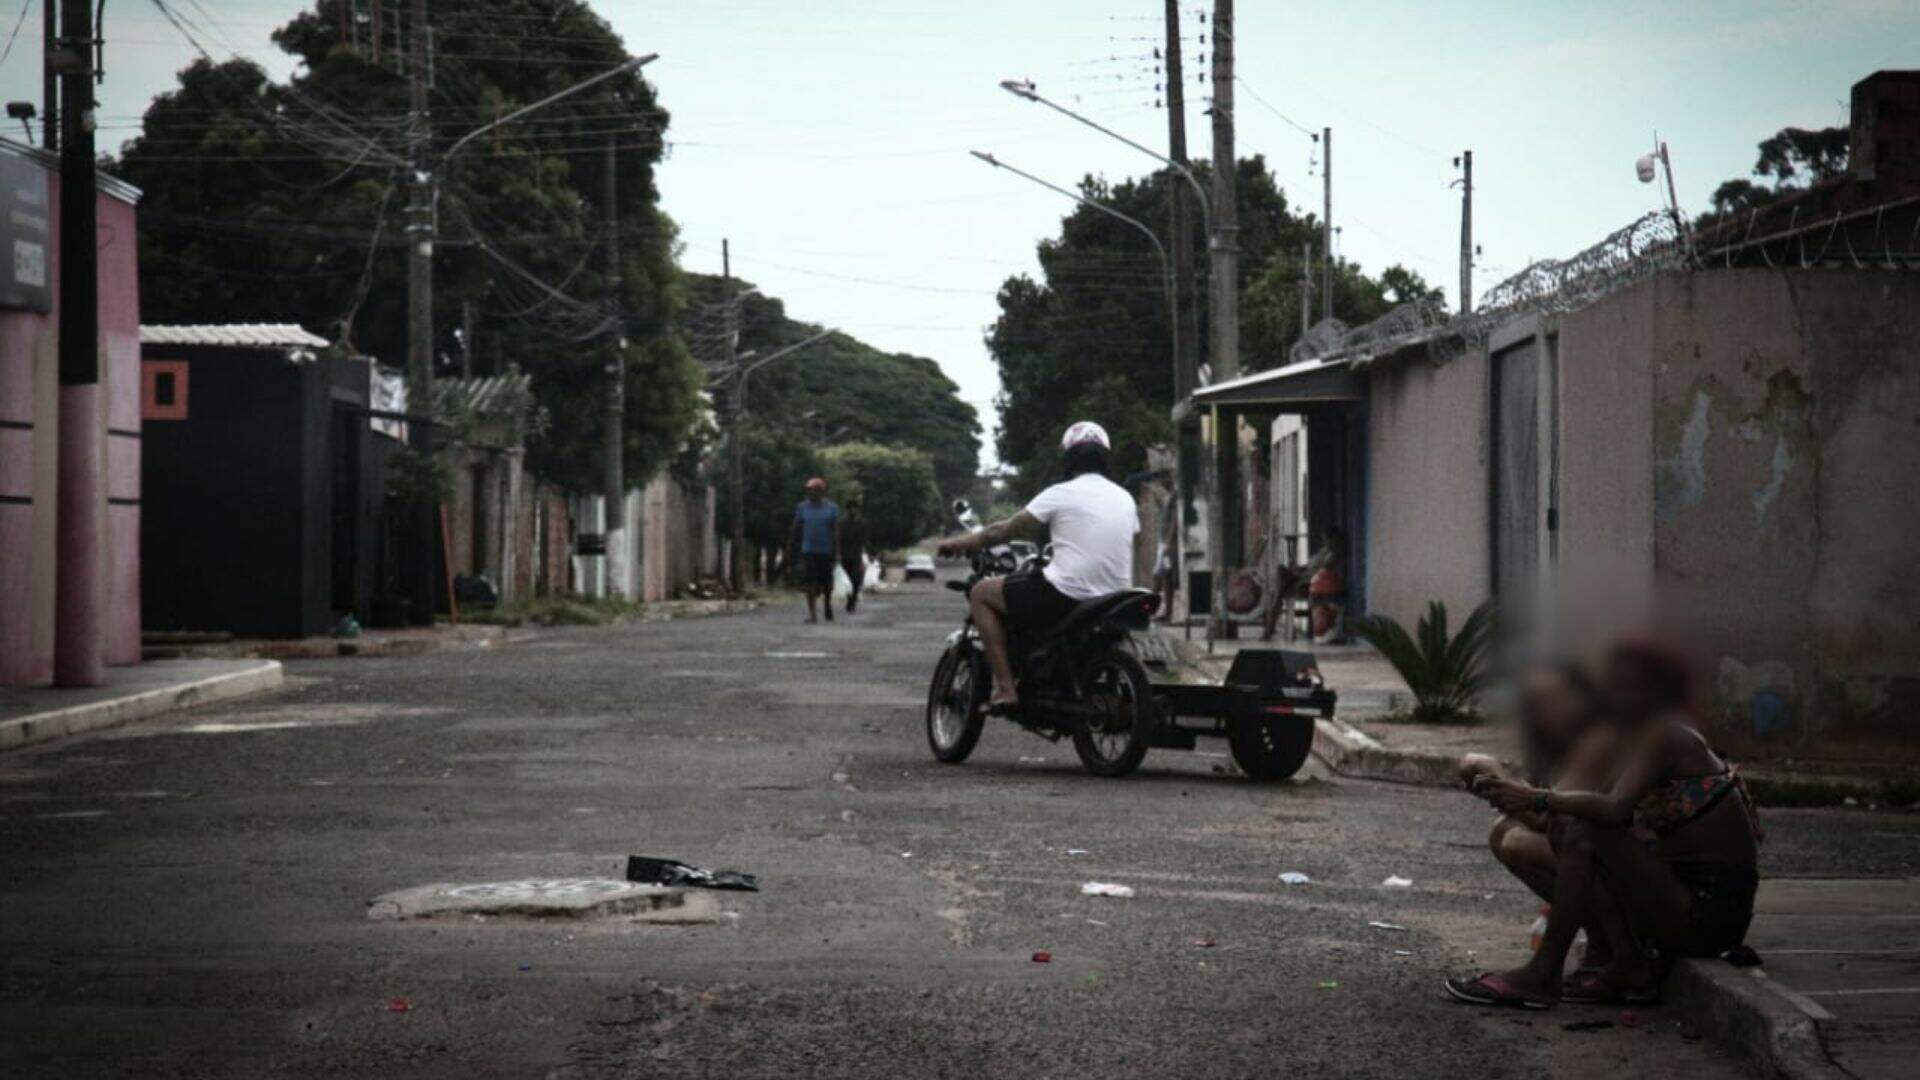 Narcotráfico doméstico avança e ‘minicracolândias’ se espalham por bairros de Campo Grande